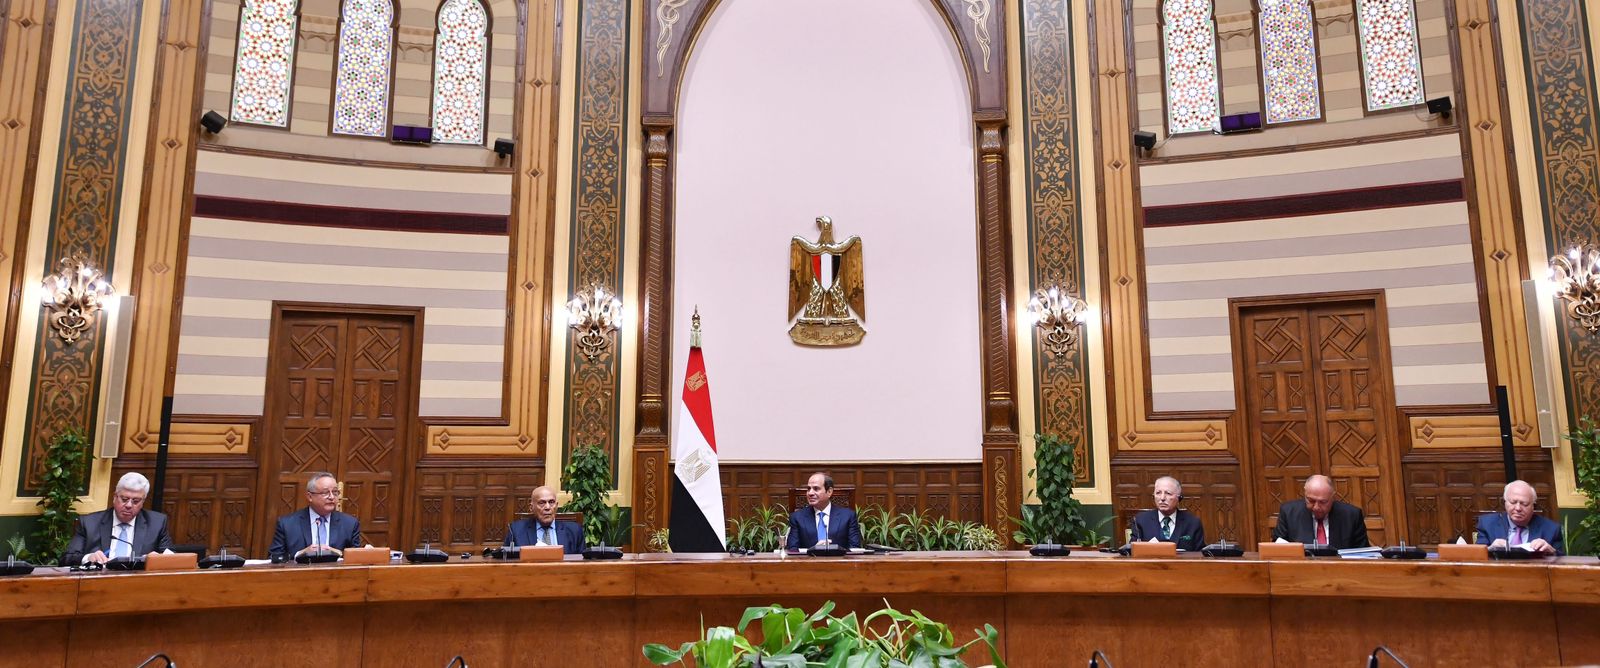 الرئيس السيسي يلتقى أعضاء مجلس أمناء مكتبة الإسكندرية  (3)